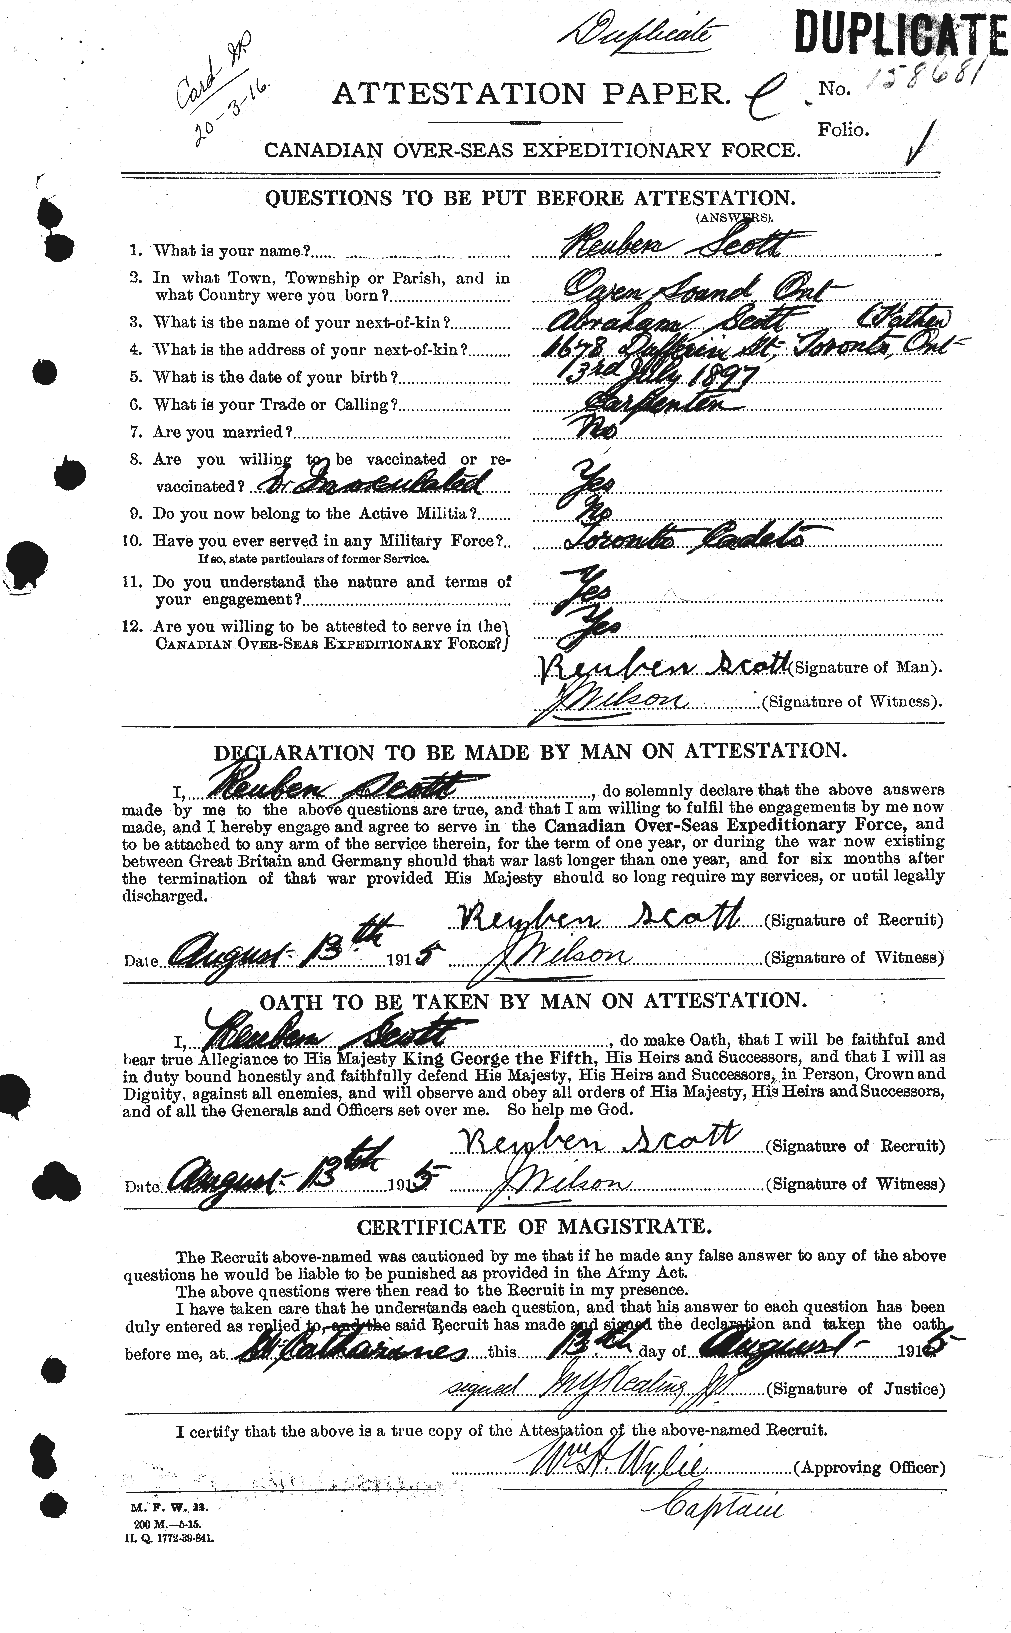 Dossiers du Personnel de la Première Guerre mondiale - CEC 090188a